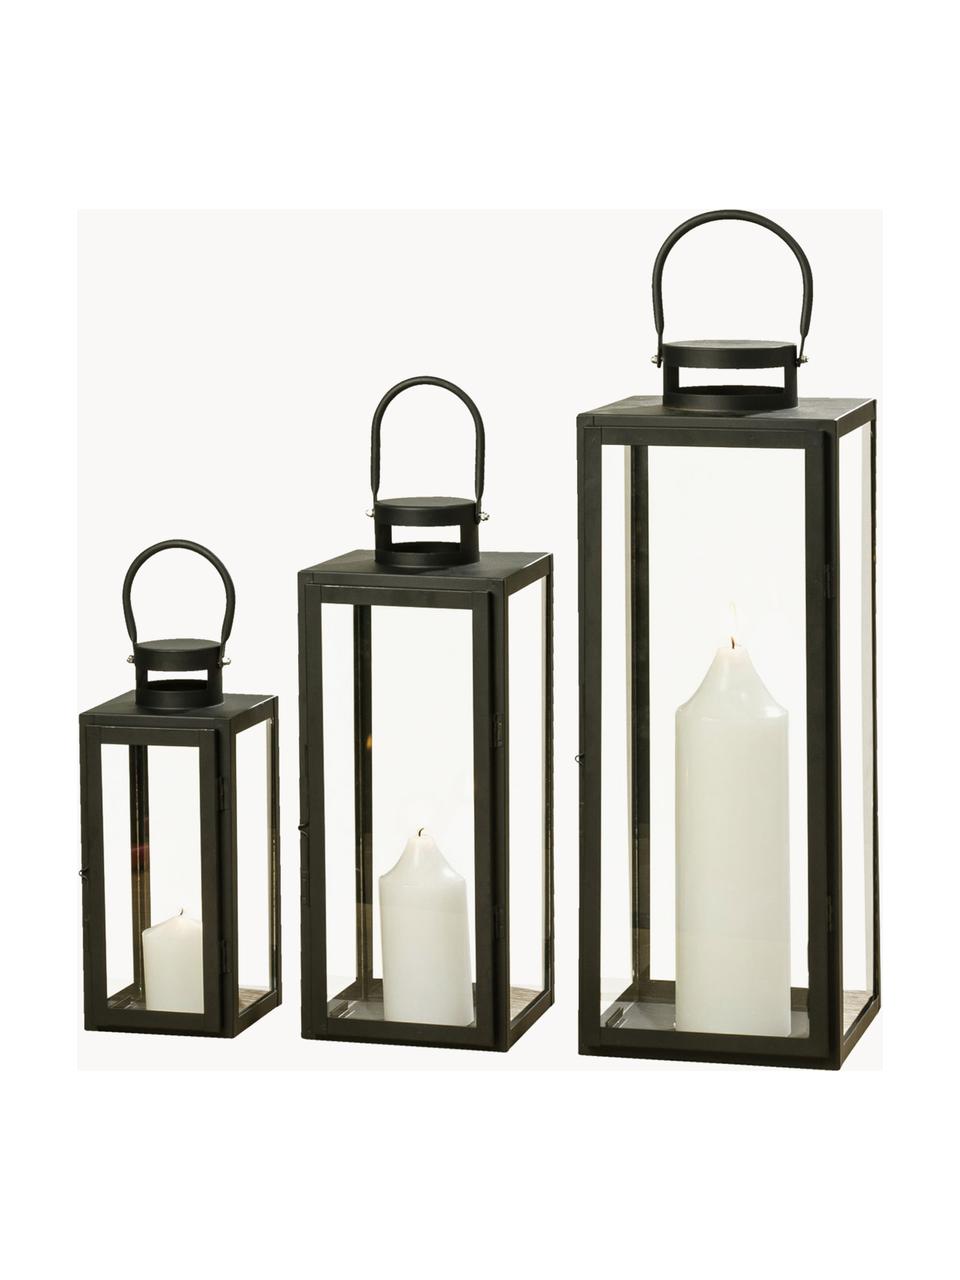 Lanternes Arana, 3 élém., Verre, métal, Noir, transparent, Lot de différentes tailles